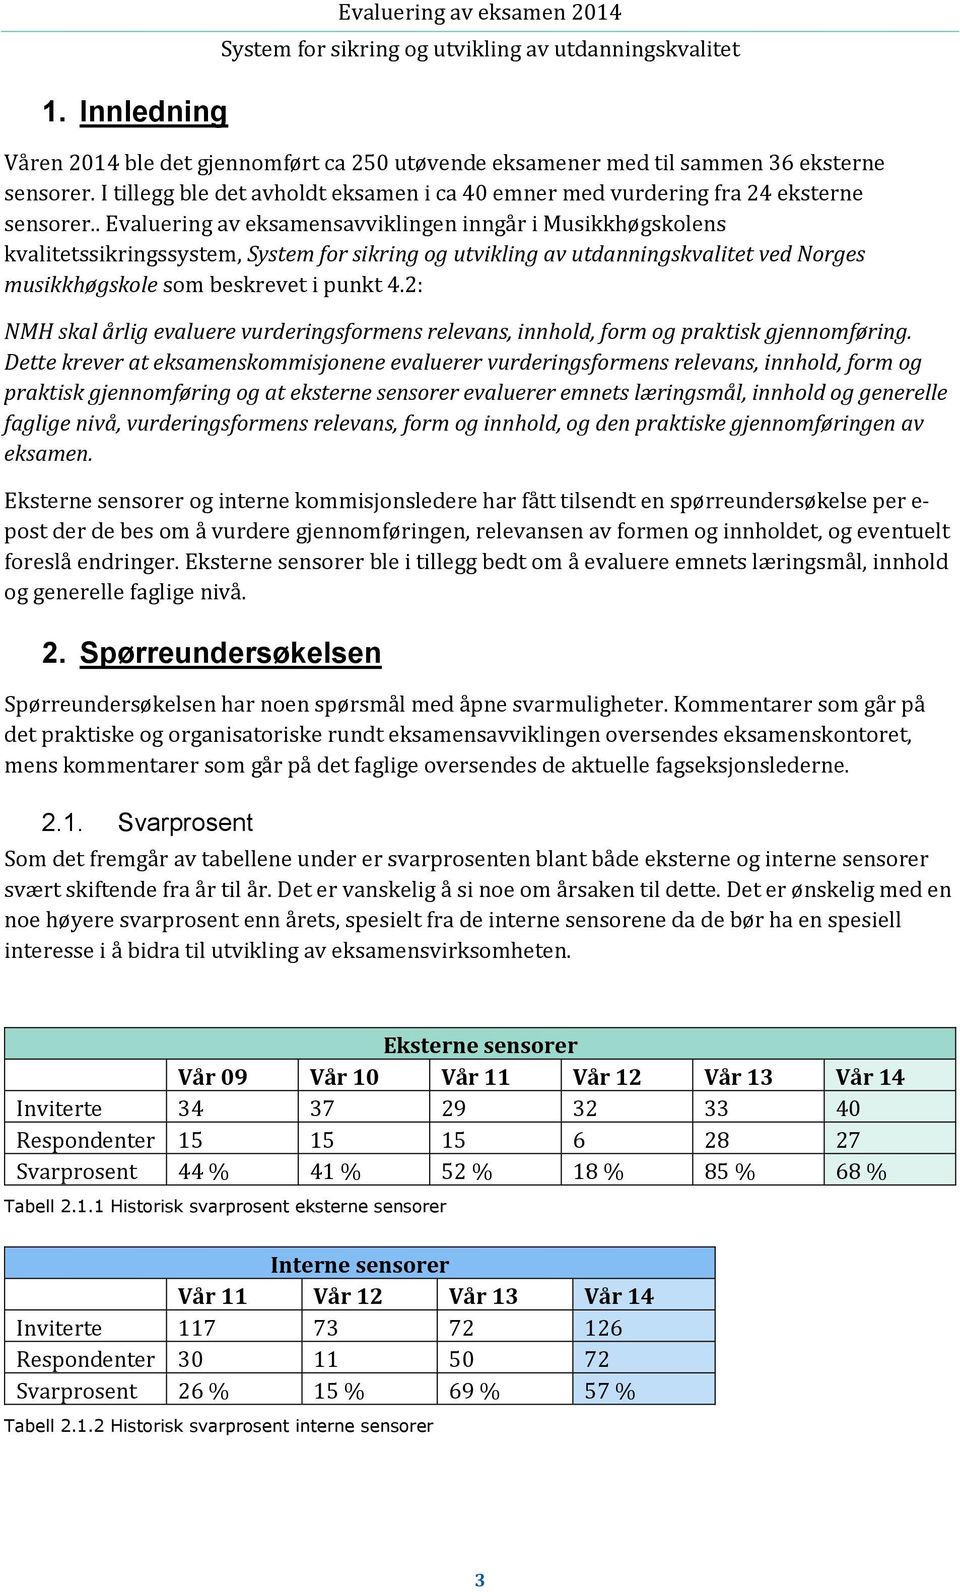 . Evaluering av eksamensavviklingen inngår i Musikkhøgskolens kvalitetssikringssystem, ved Norges musikkhøgskole som beskrevet i punkt 4.